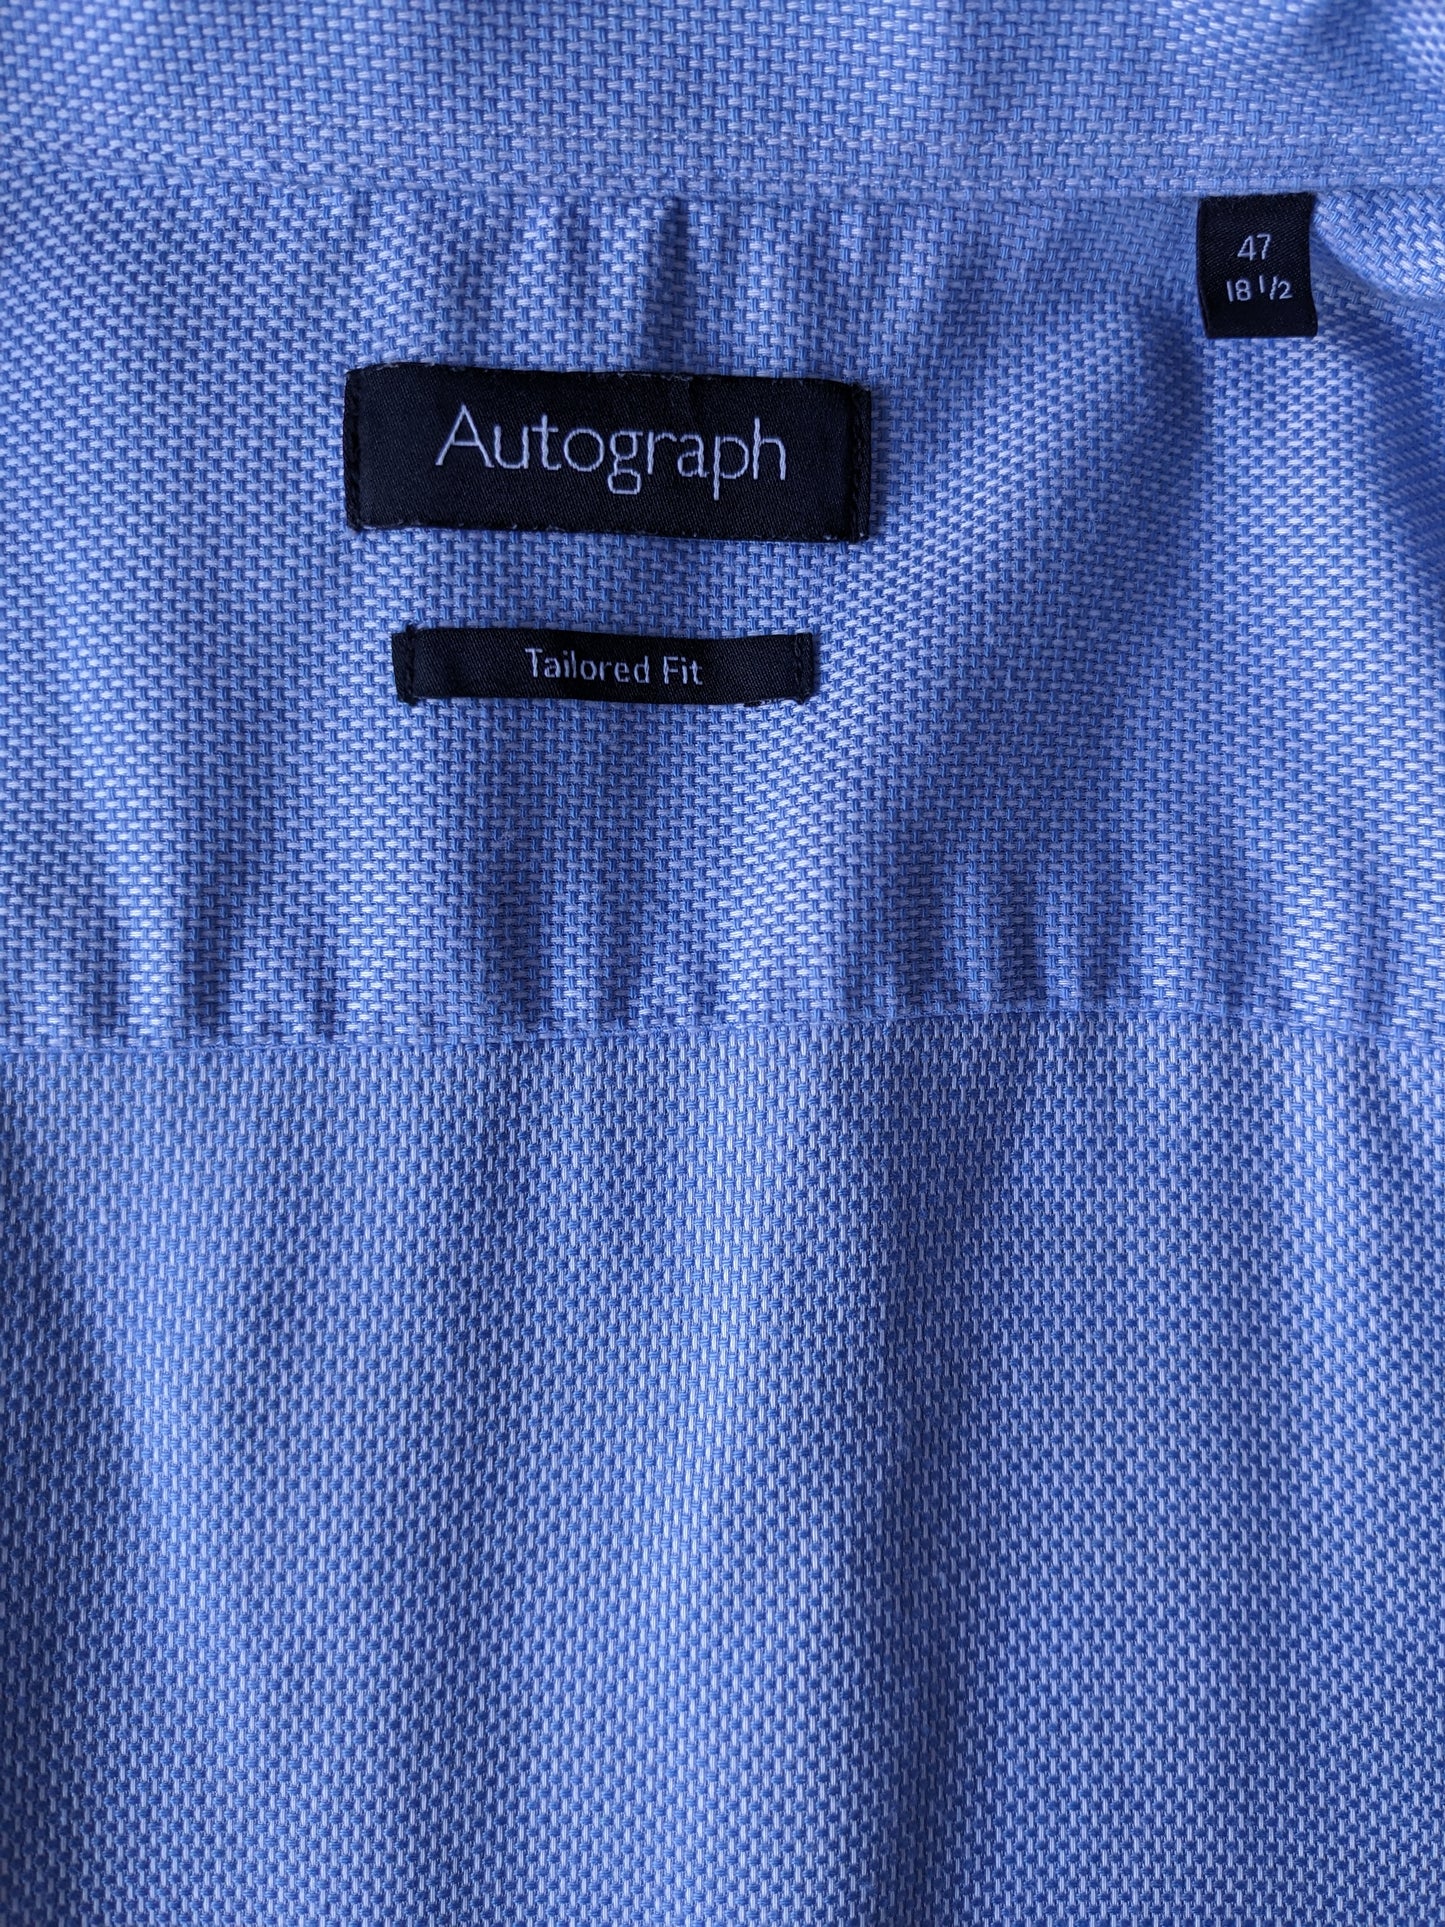 Camicia autografa. Motivo bianco blu. Dimensione 47 / 2xl-xxl. Adattamento su misura.